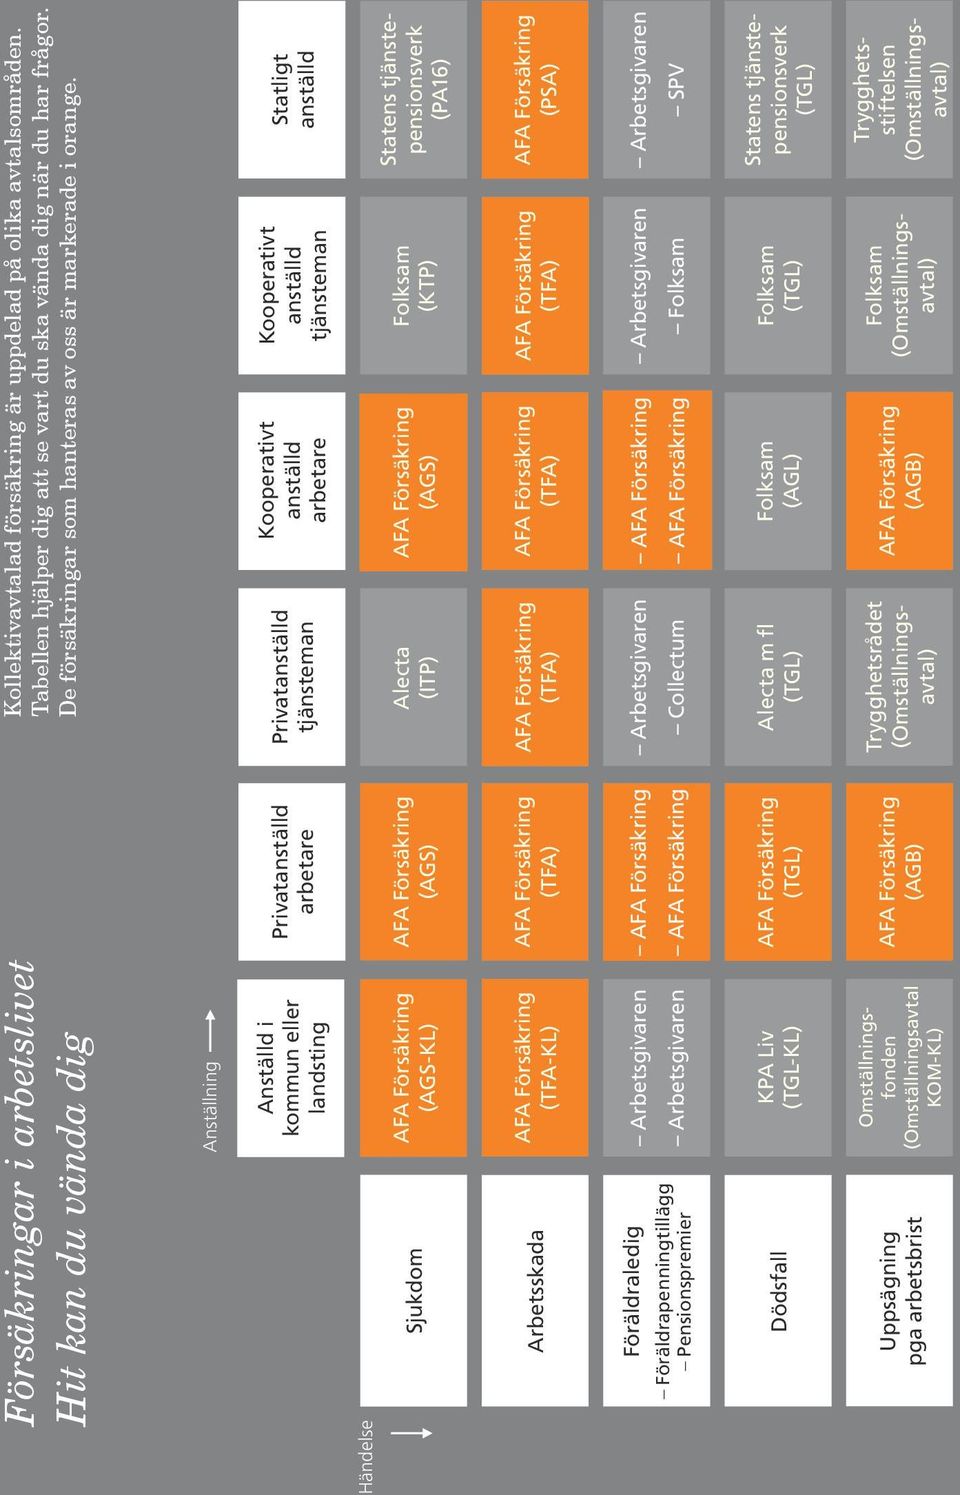 Tabellen hjälper dig att se vart du ska vända dig när du har frågor. De försäkringar som hanteras av oss är markerade i orange.